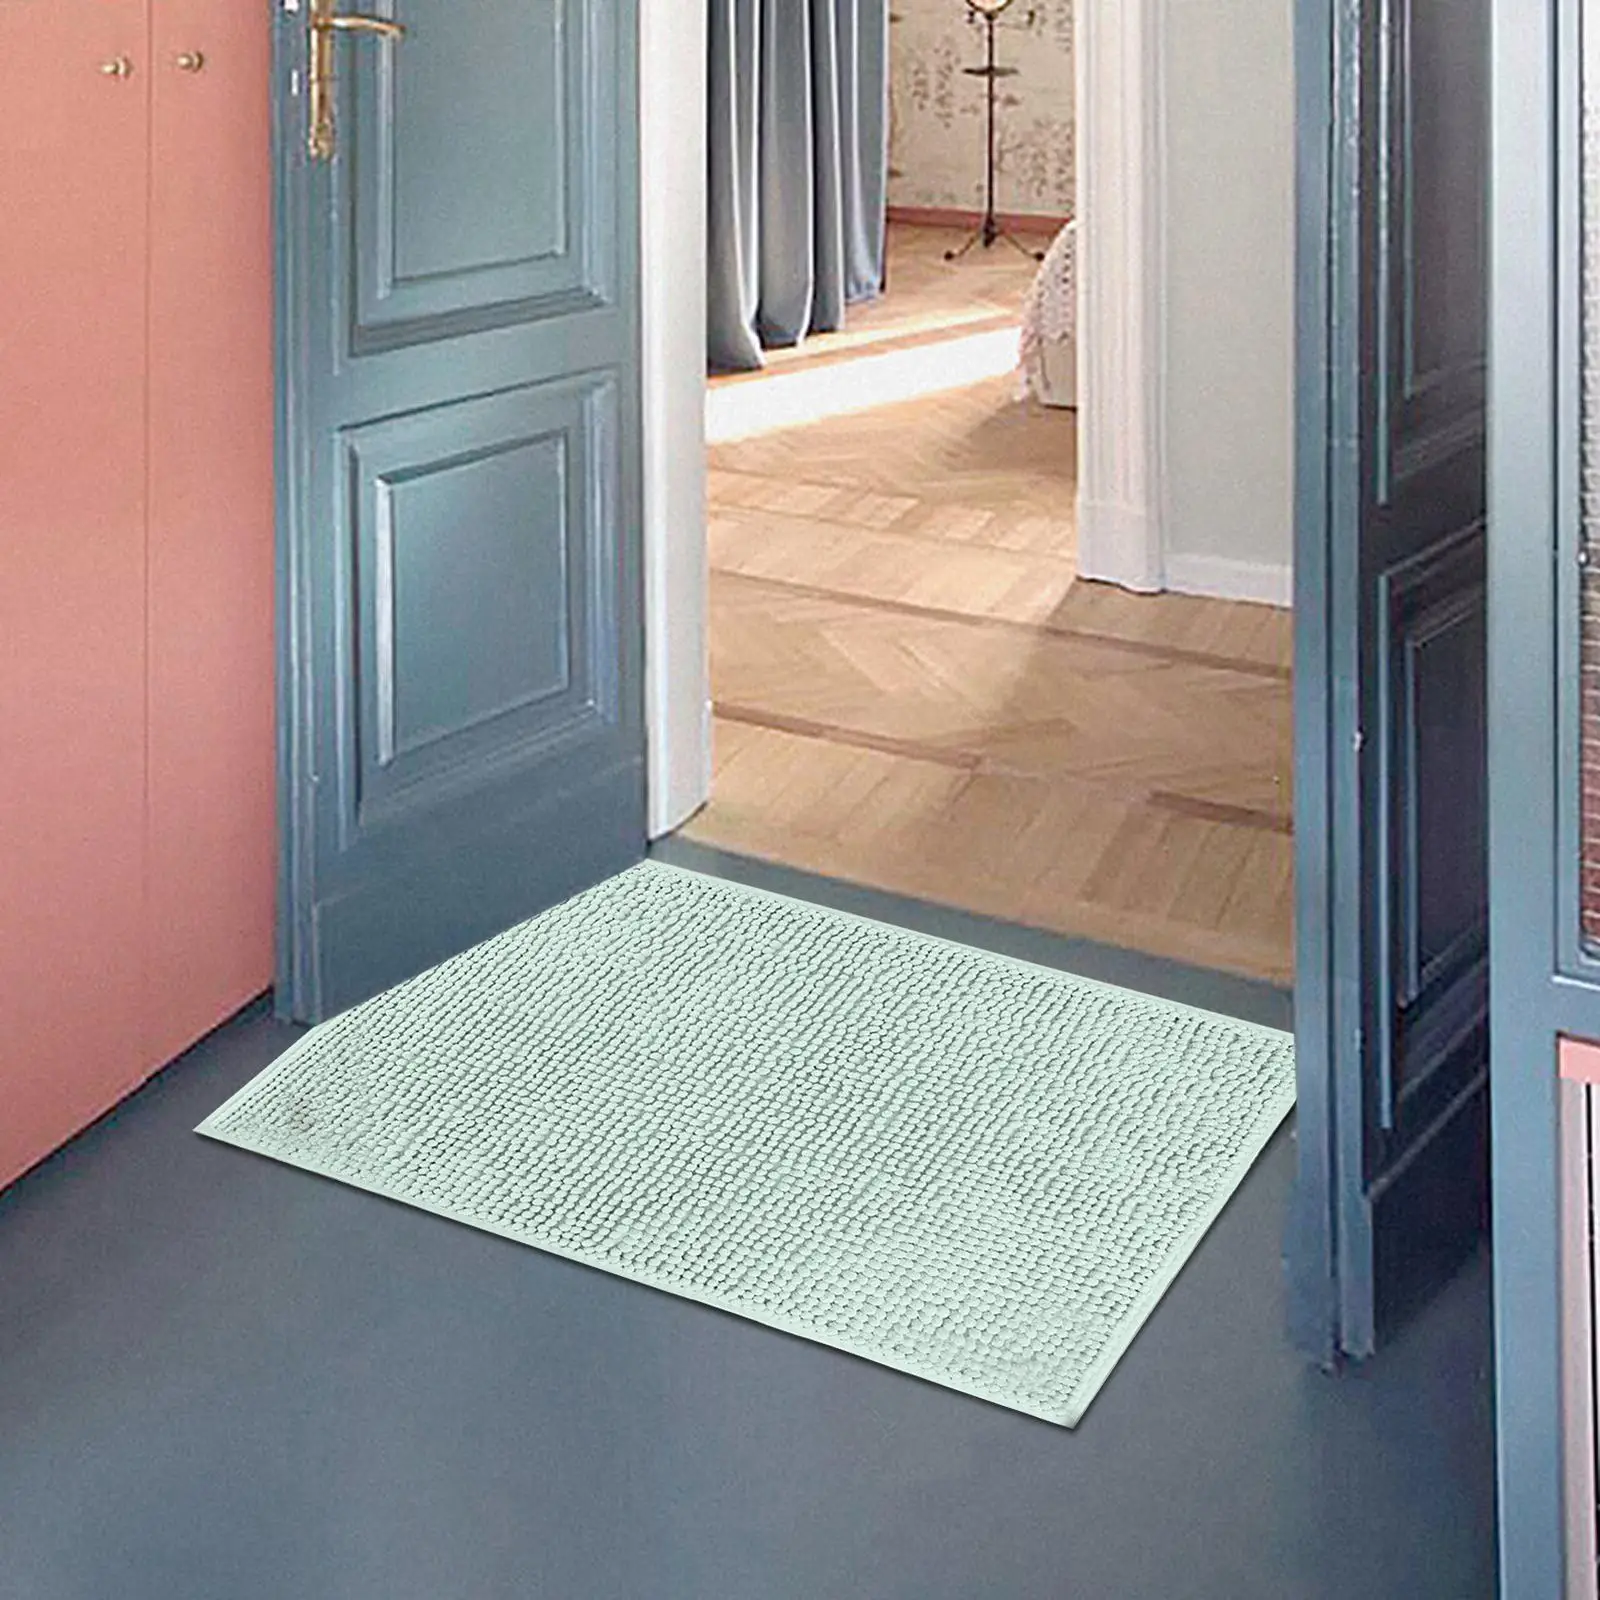 Door Mat Indoor Doormat 45cmx70cm Pet Dog Door Mat Soft Super Absorbent Washable